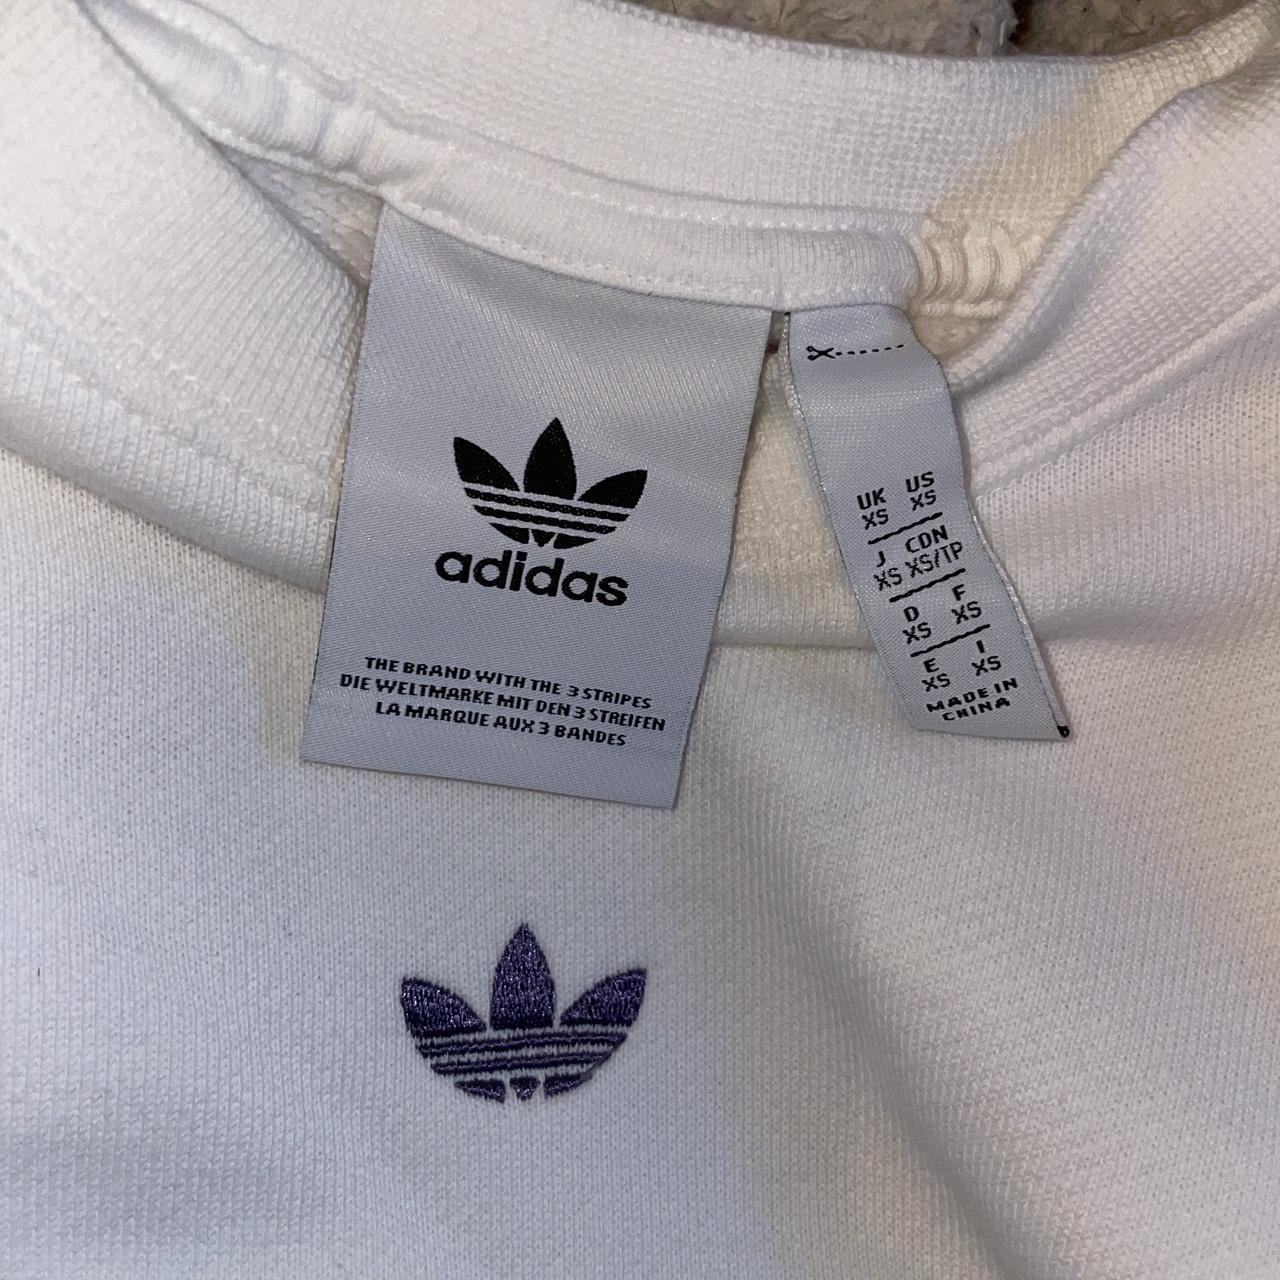 Adidas originals sweatshirt with 3 stripes in white... - Depop